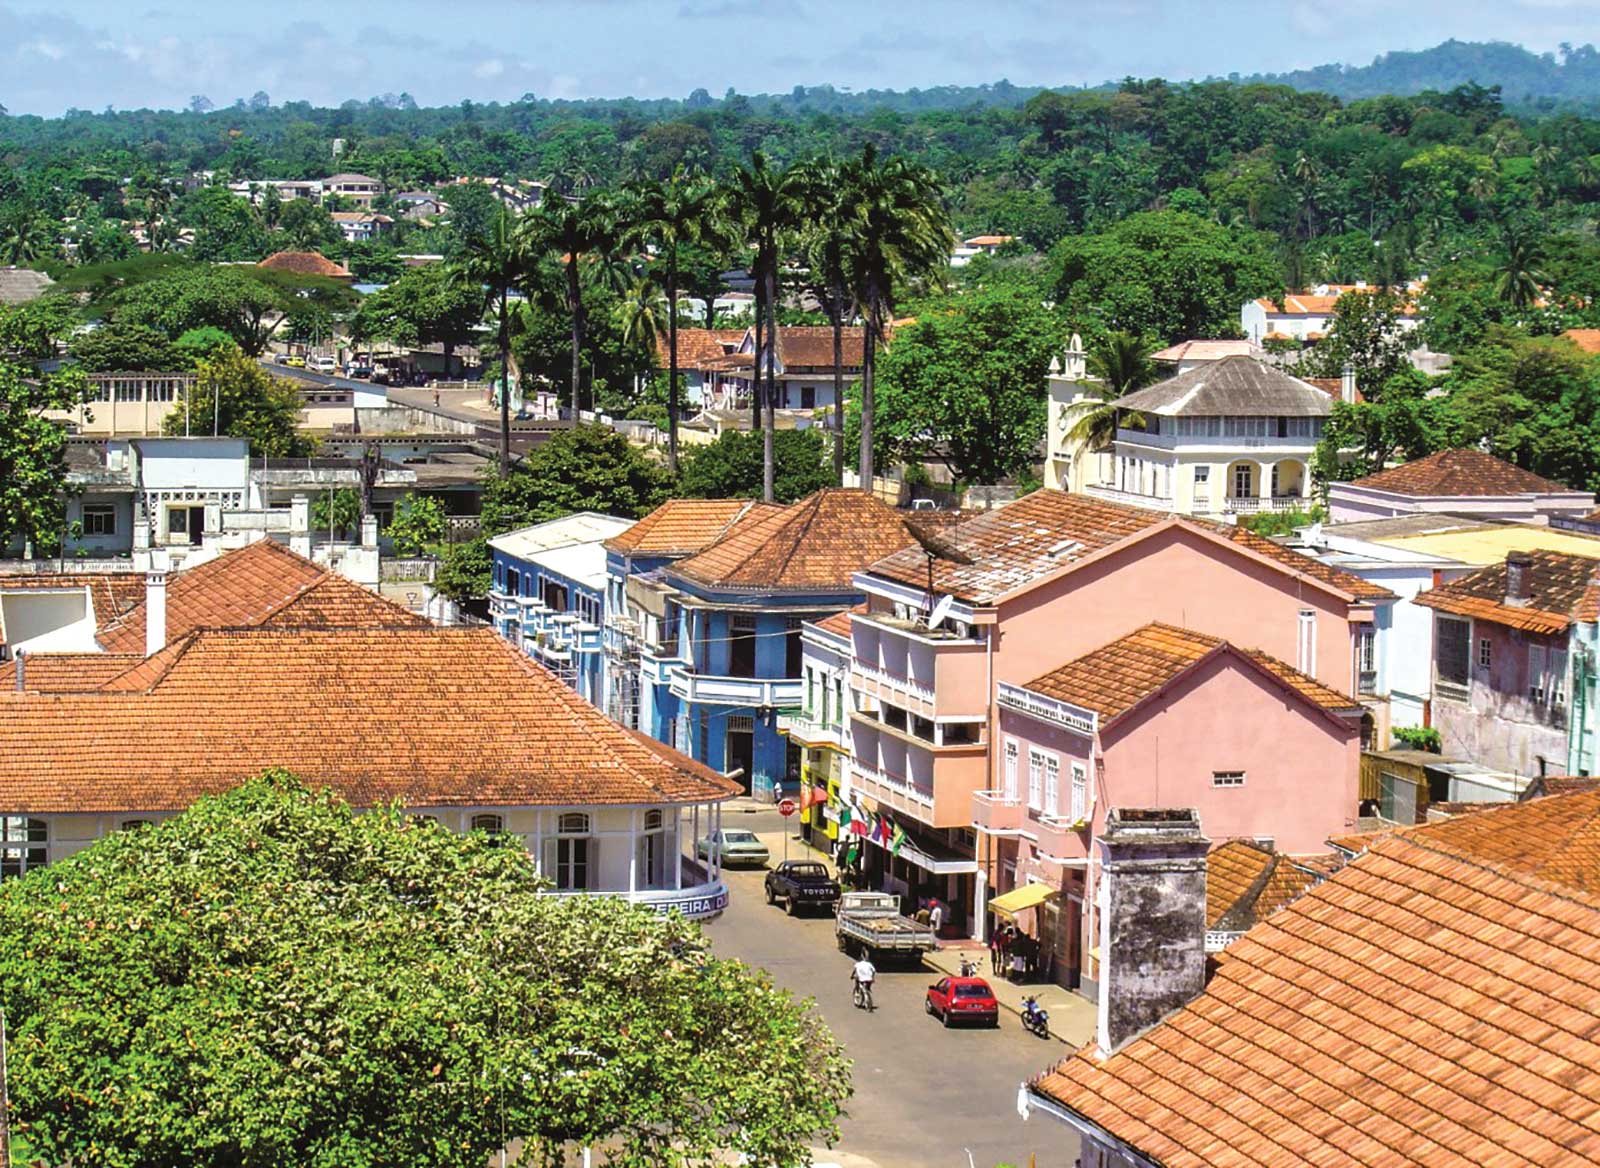 Tour de ville de São Tomé, Excursion d'une occasion unique pour un premier contact avec la vie et l’histoire santoméennes